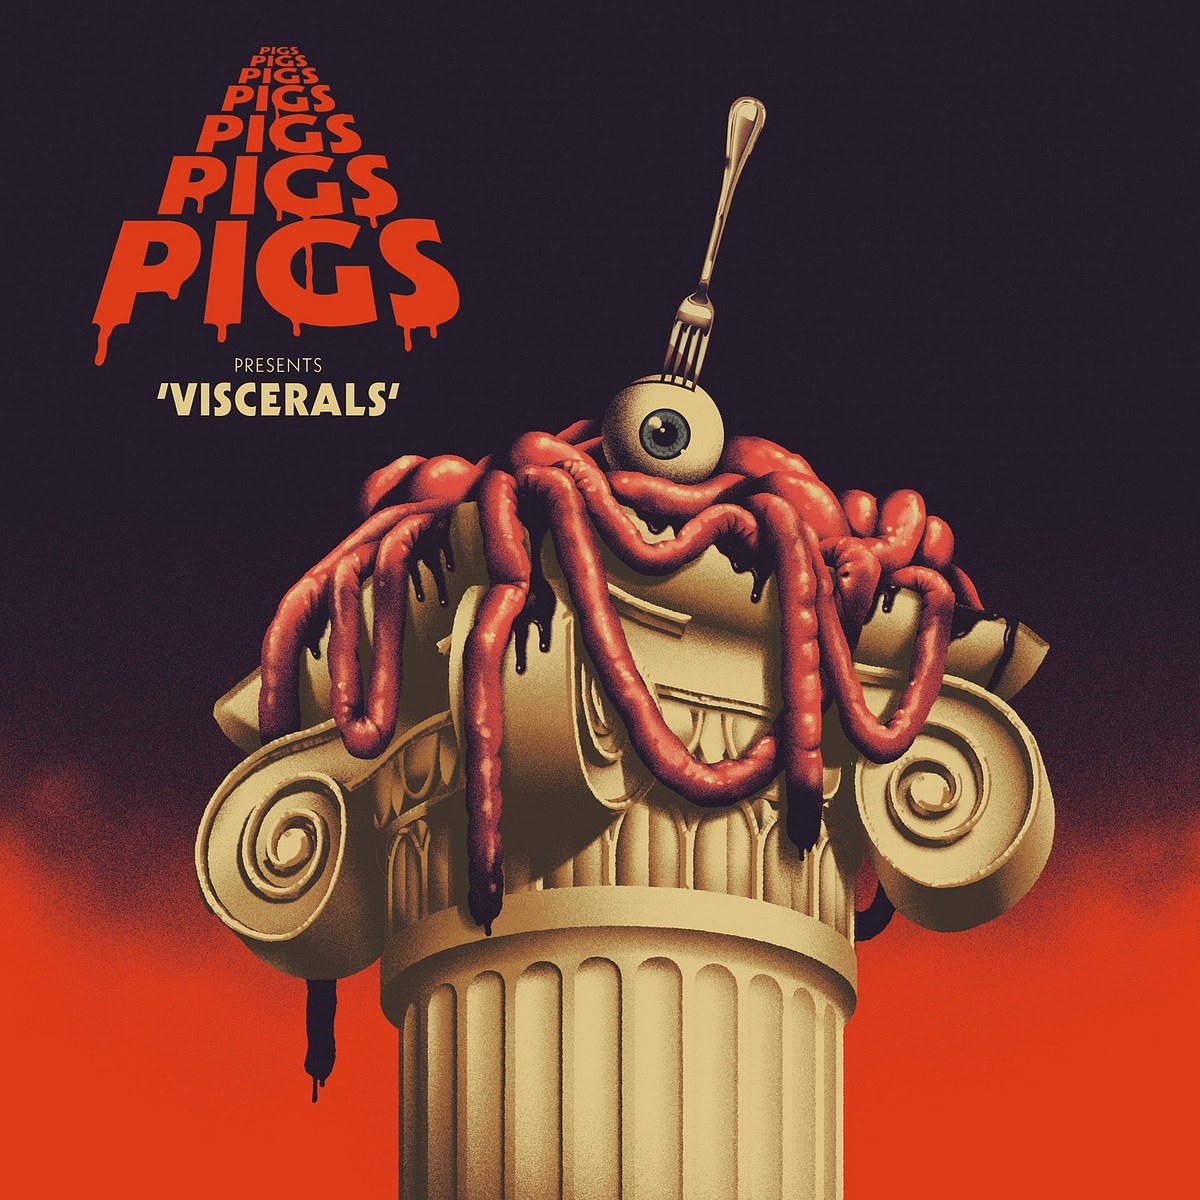 Pigs Pigs Pigs Pigs Pigs Pigs Pigs - Viscerals (2020) [FLAC 24bit/44,1kHz]